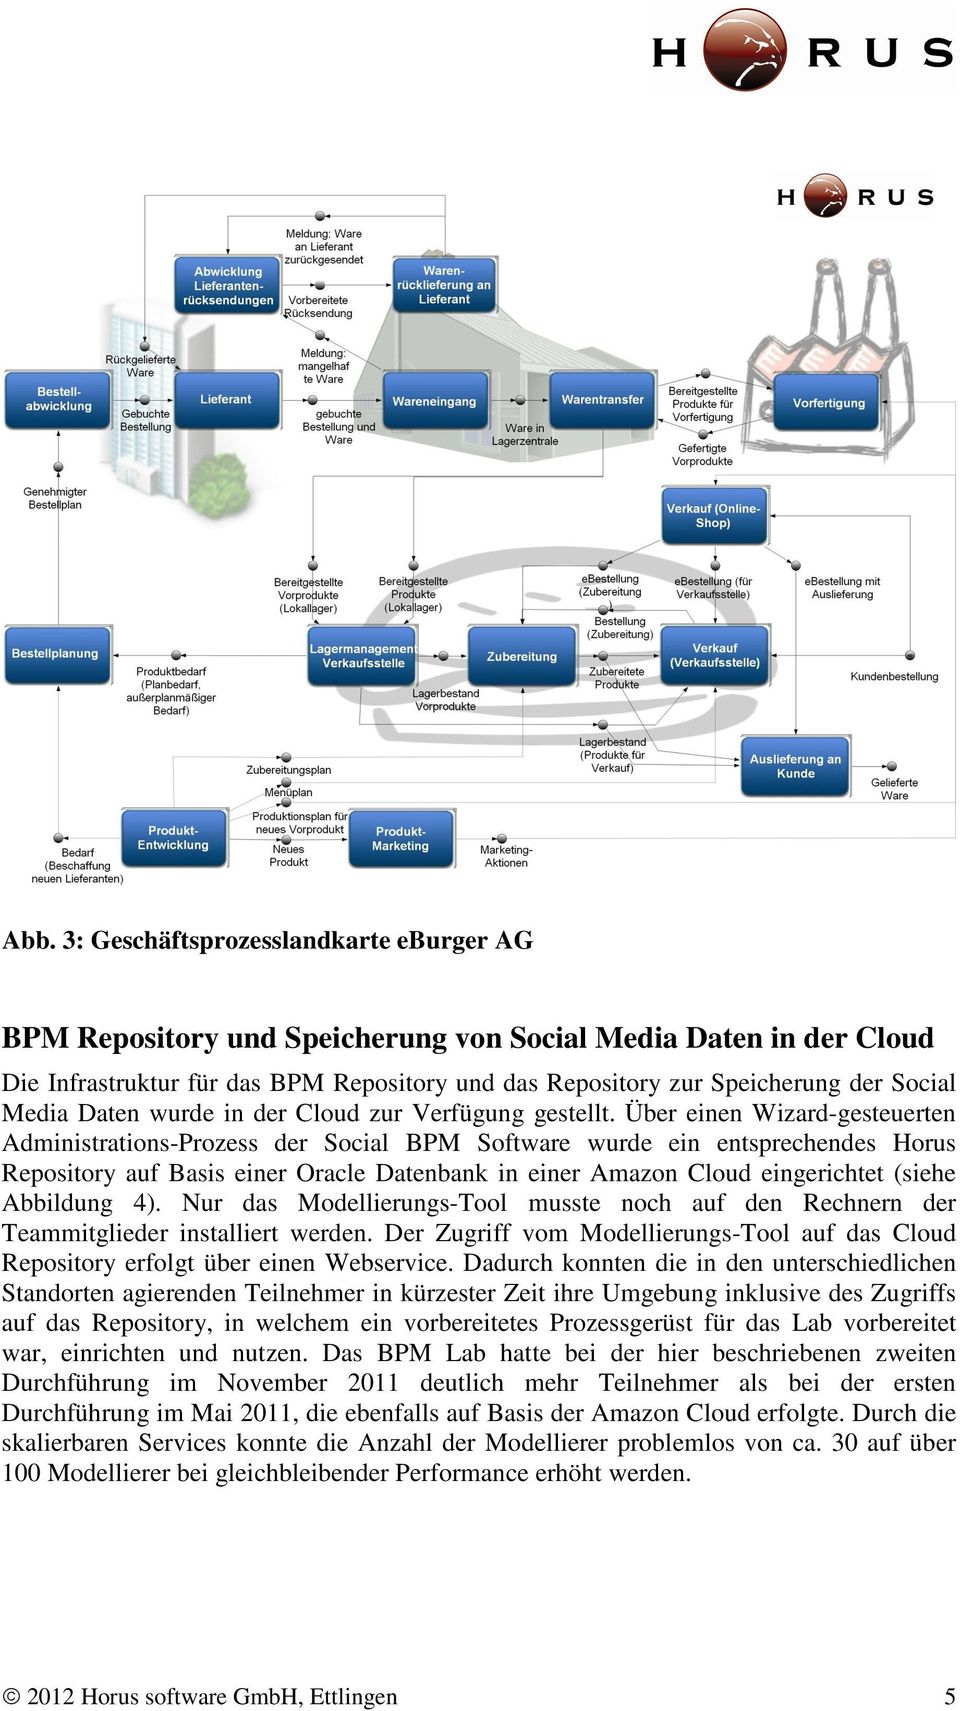 Über einen Wizard-gesteuerten Administrations-Prozess der Social BPM Software wurde ein entsprechendes Horus Repository auf Basis einer Oracle Datenbank in einer Amazon Cloud eingerichtet (siehe